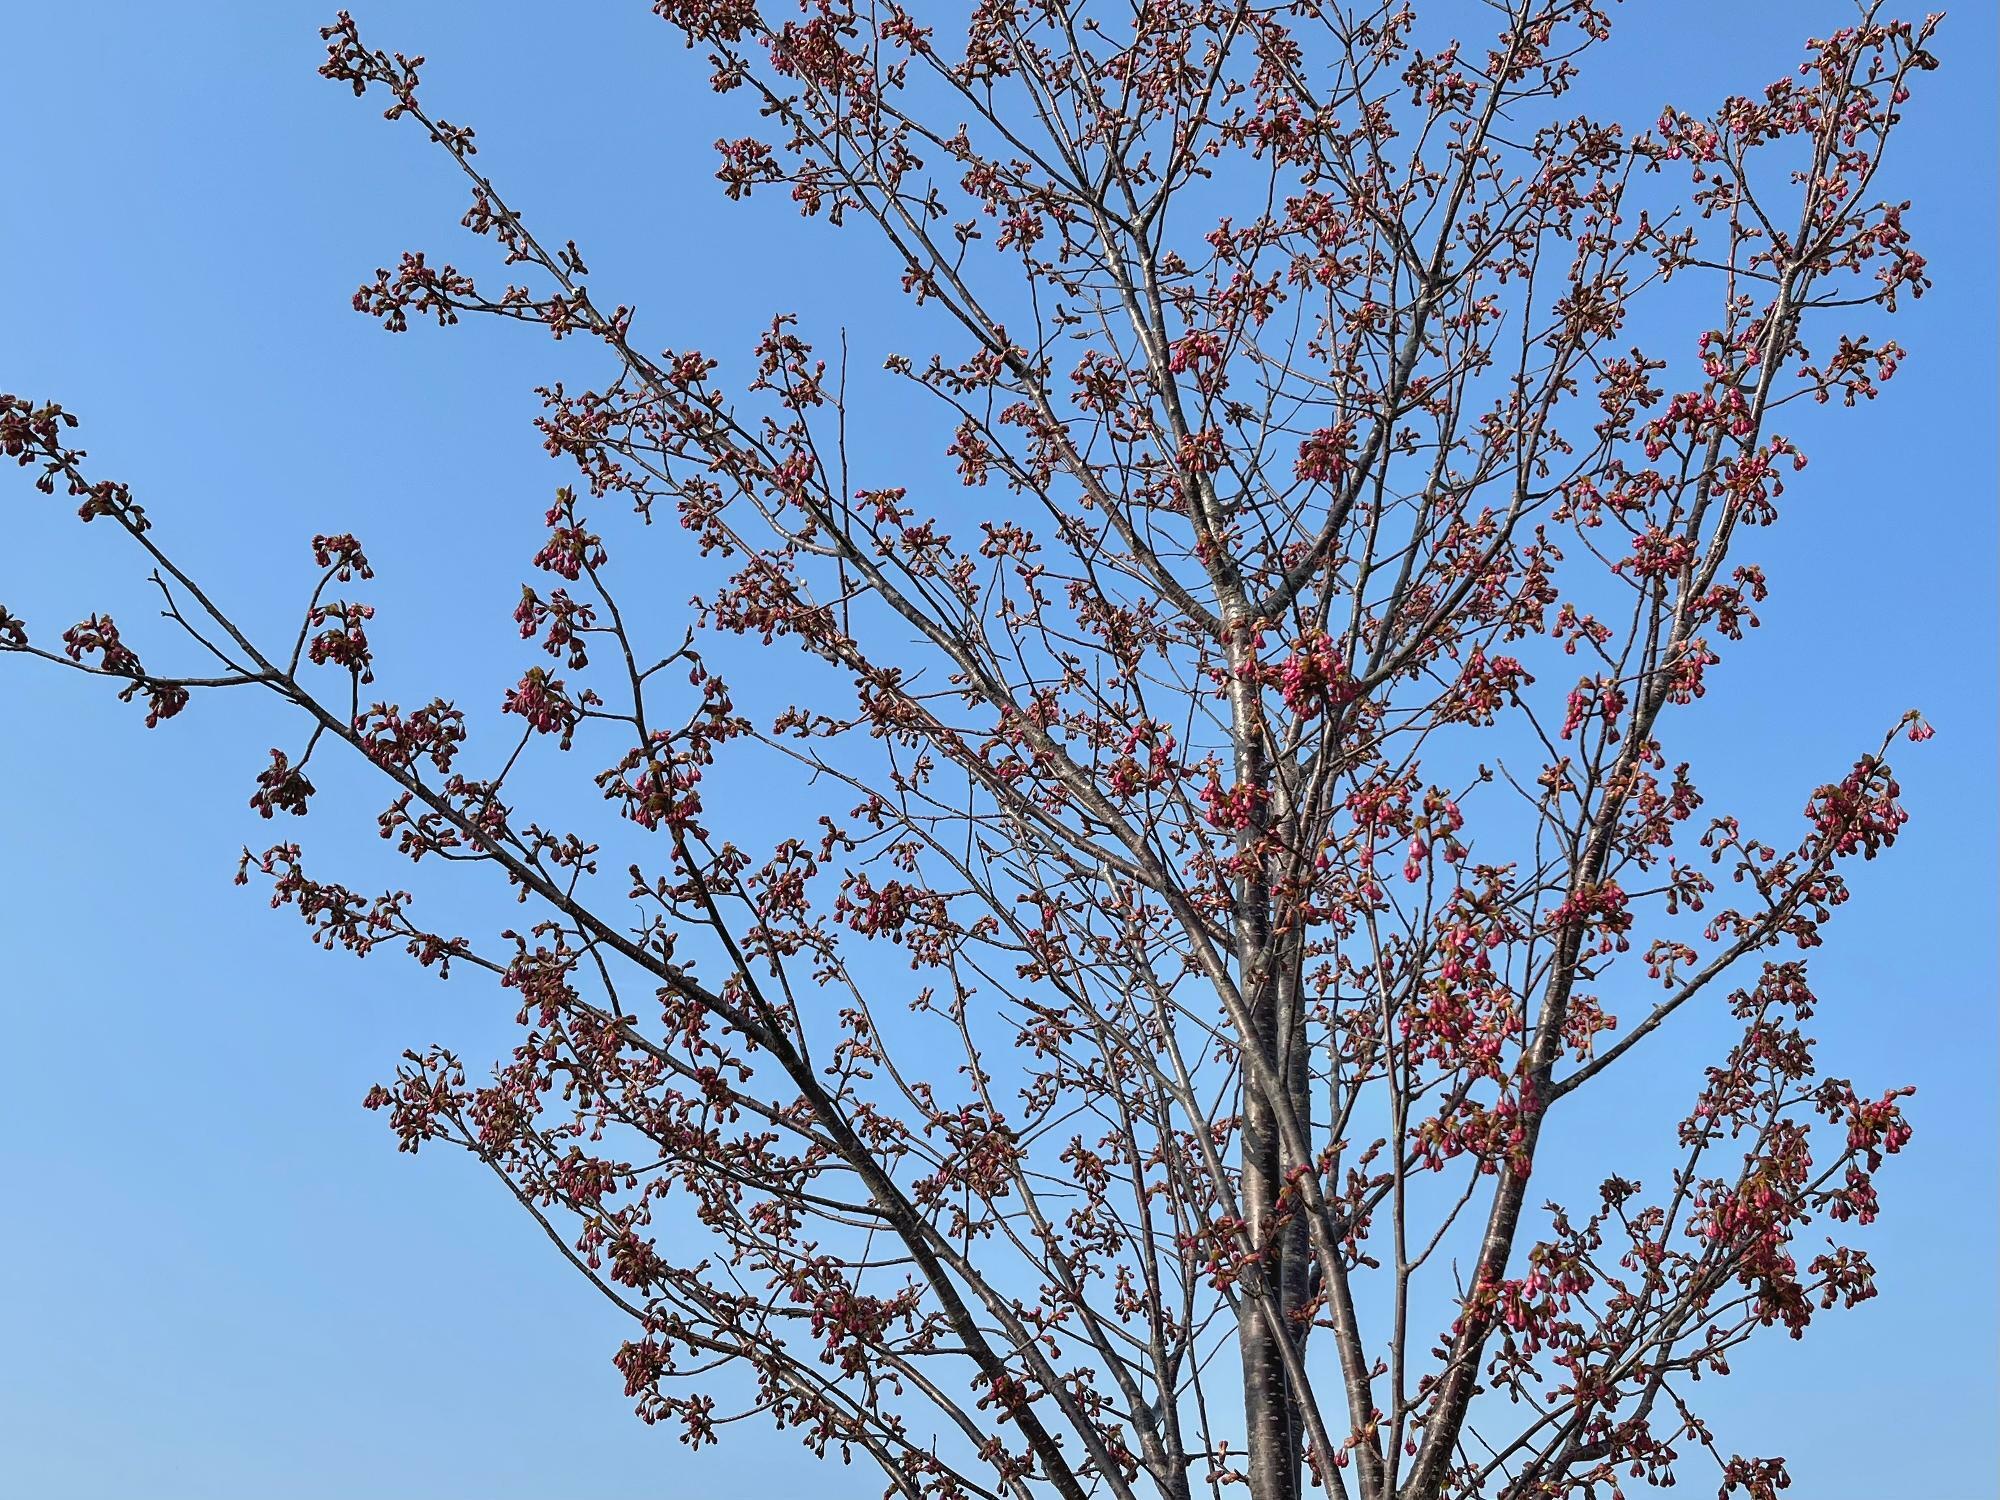 ▲ 濃い梅色のような桜のつぼみがたっぷりと下がっている